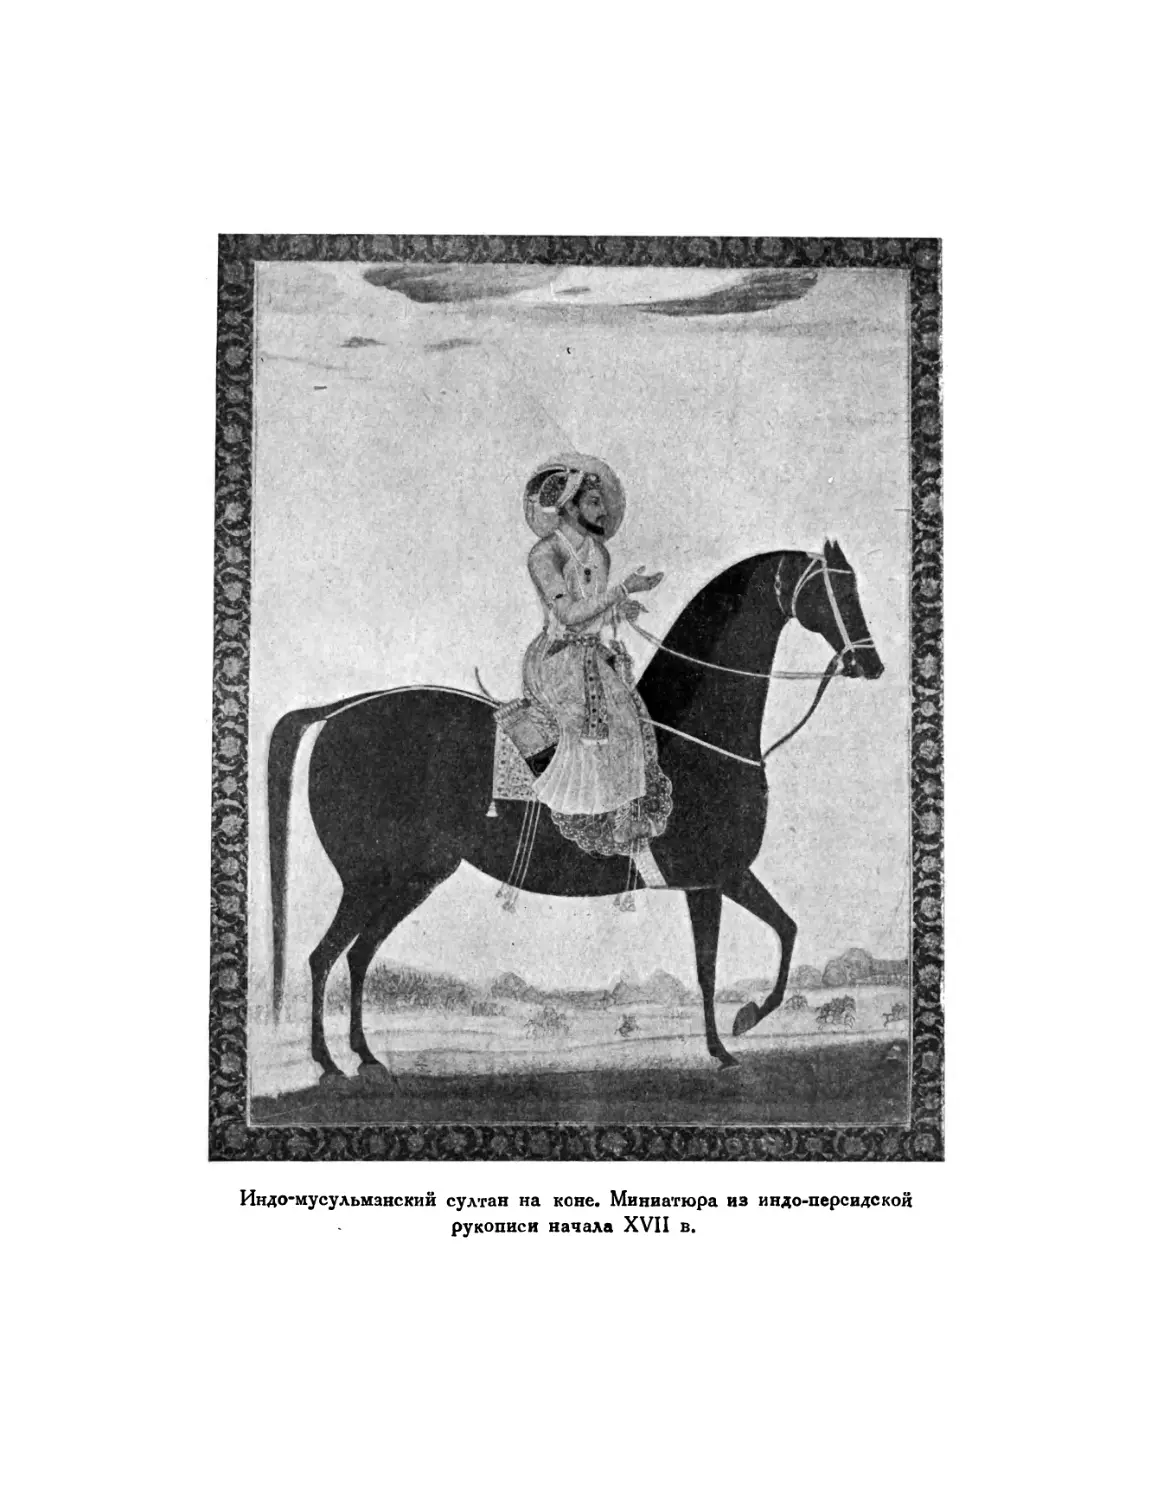 Вклейка. Индо-мусульманский султан на коне. Миниатюра из индо-персидской рукописи начала XVII в.